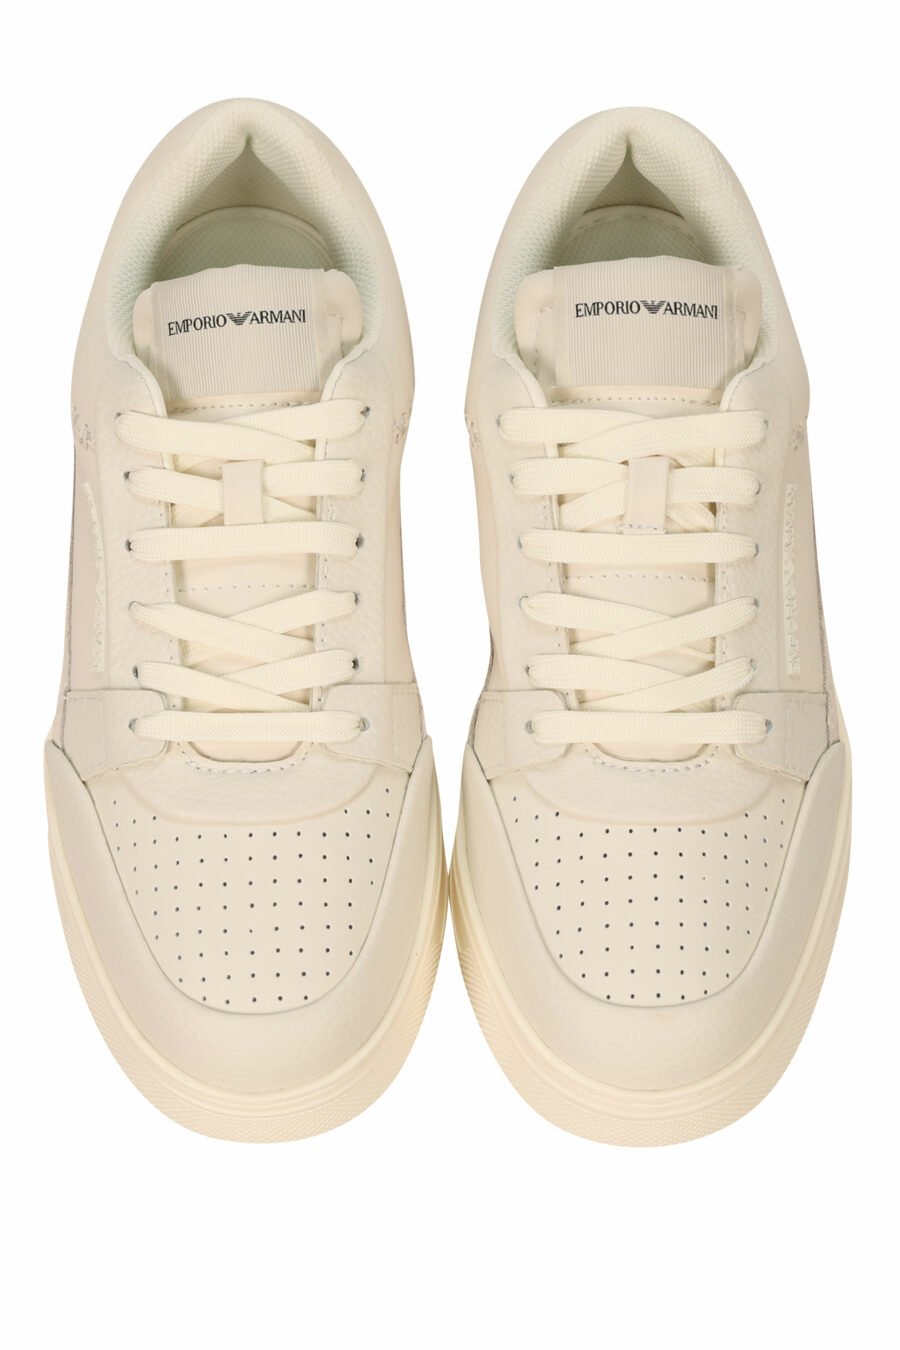 Zapatillas blancas mix con beige y minilogo en goma - 8058947169122 4